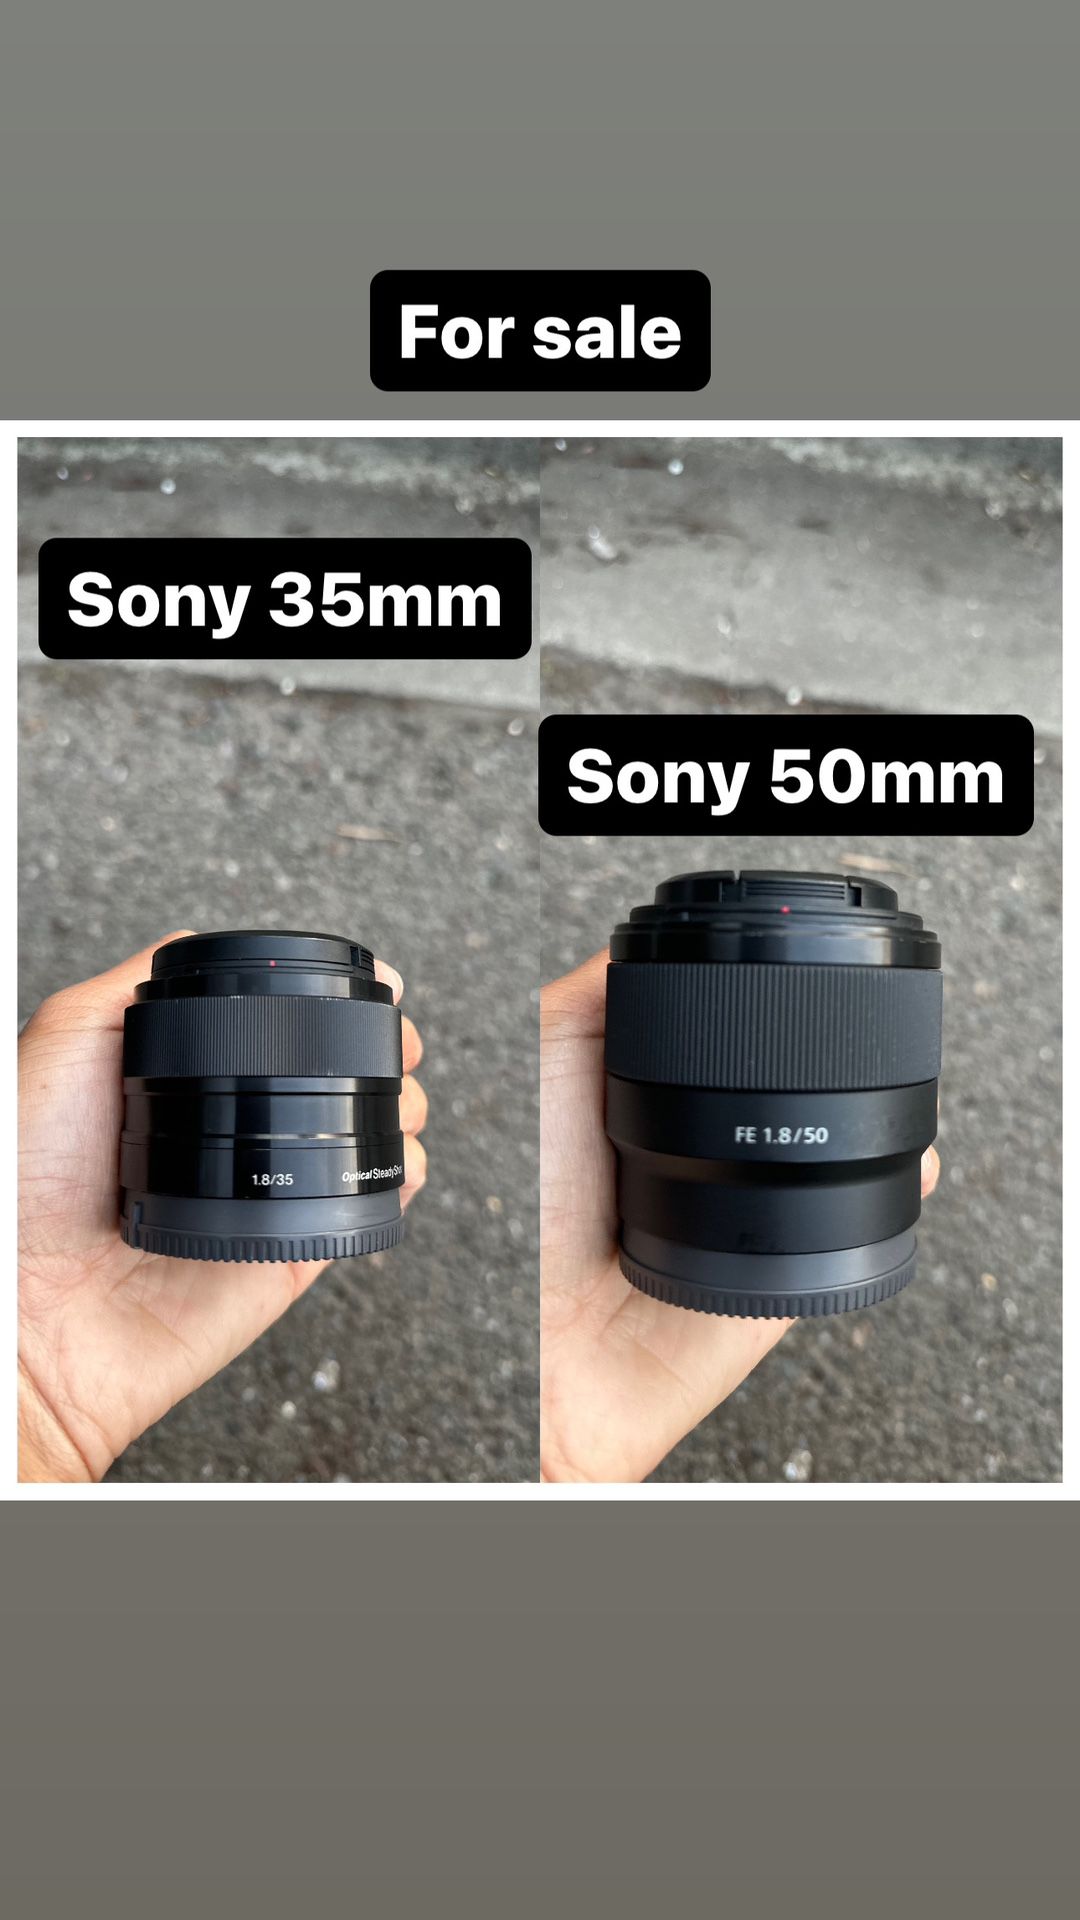 Sony 50mm & 35mm